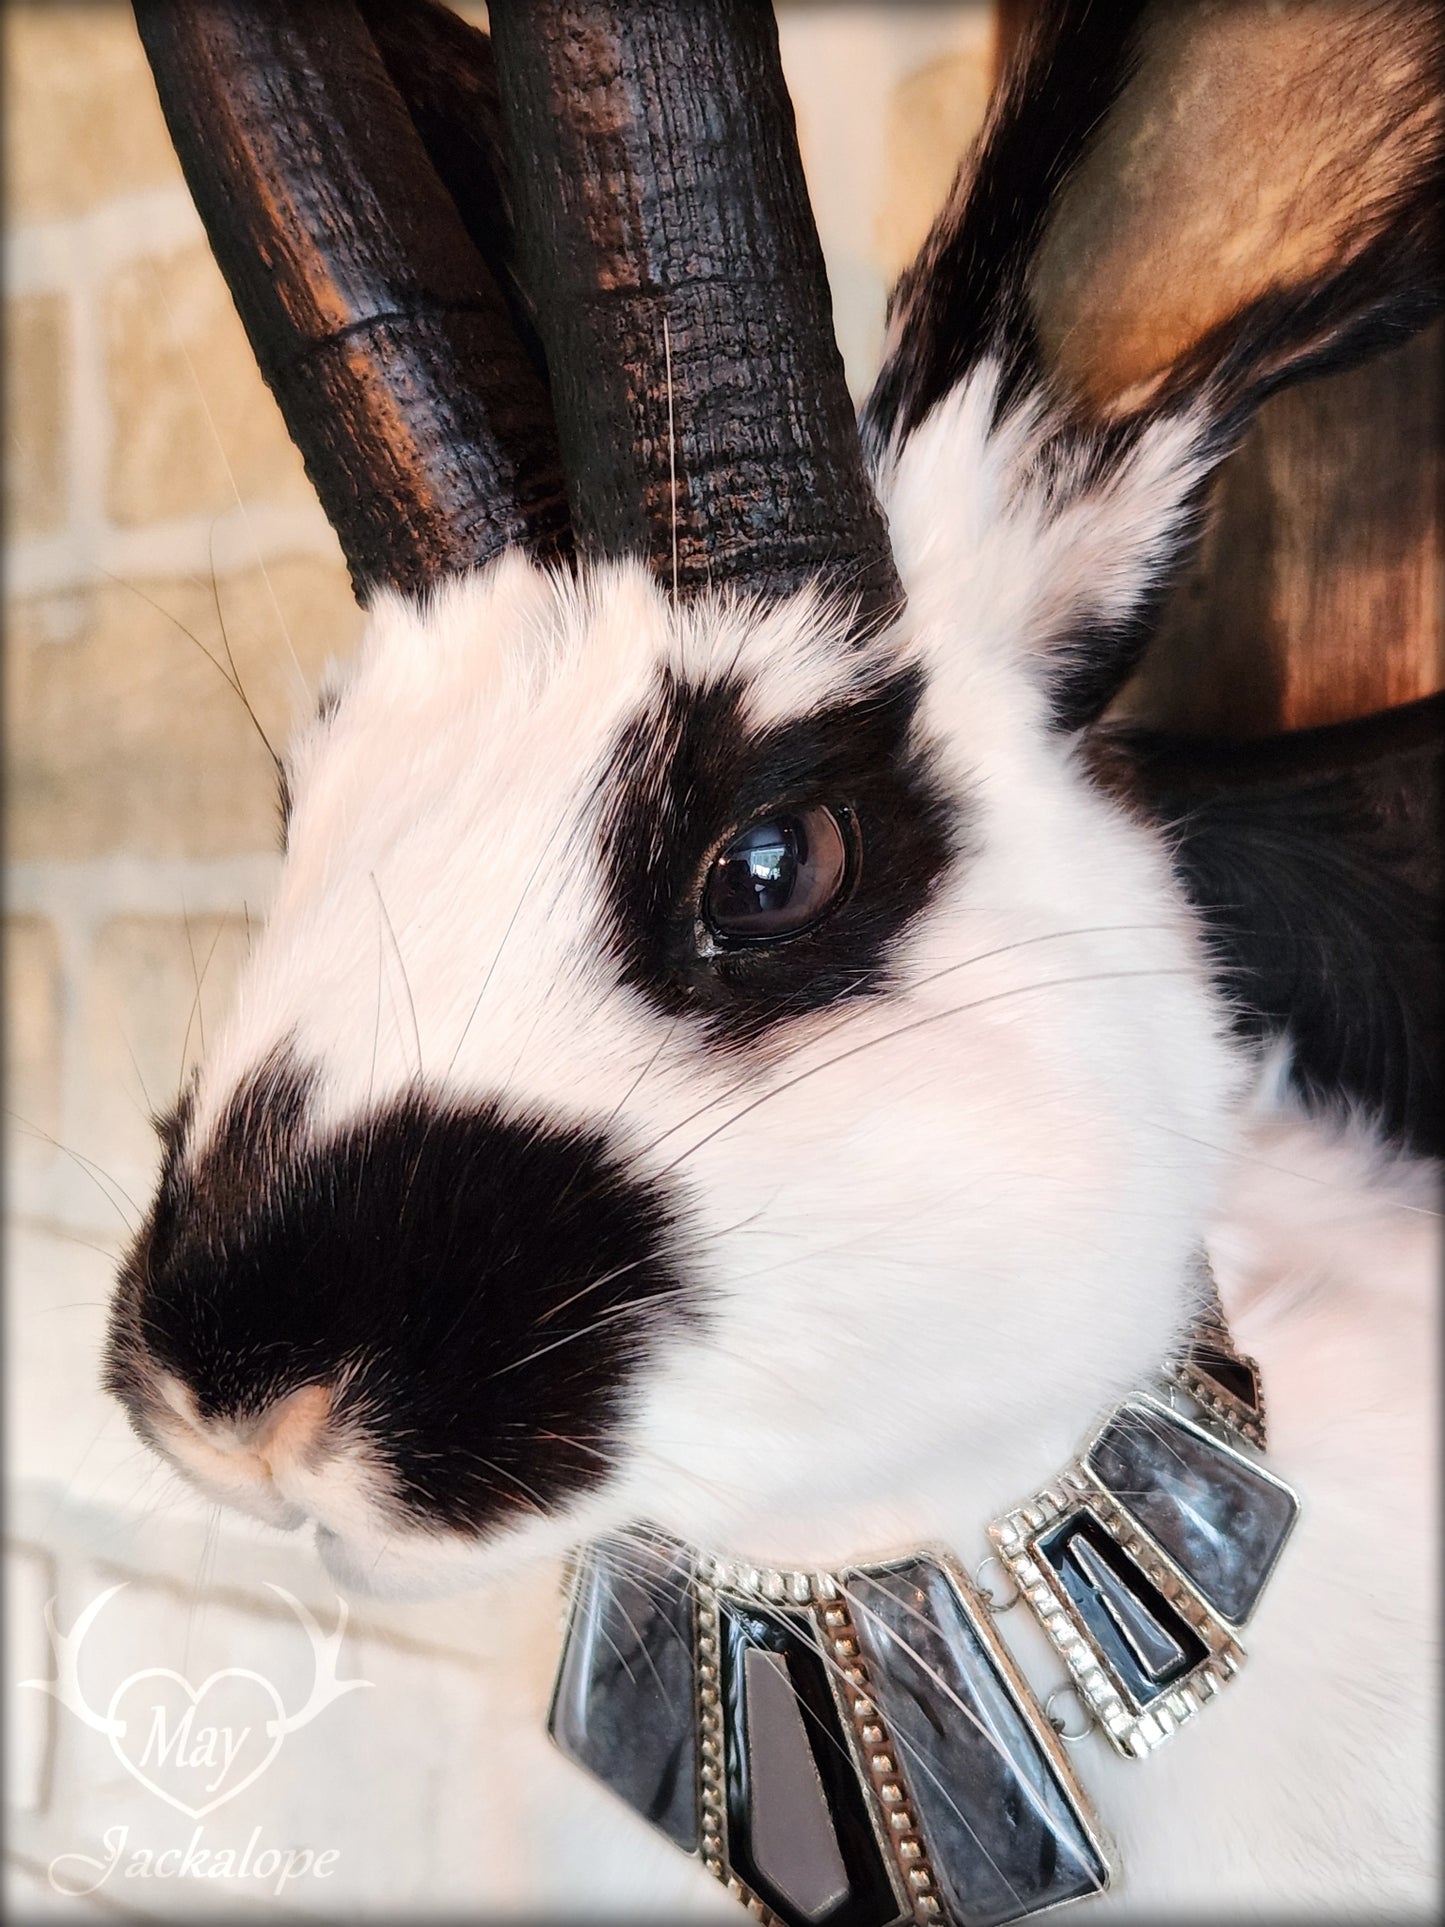 Taxidermie Jackalope noir et blanc avec réplique de cornes noires, yeux foncés et avec un collier.